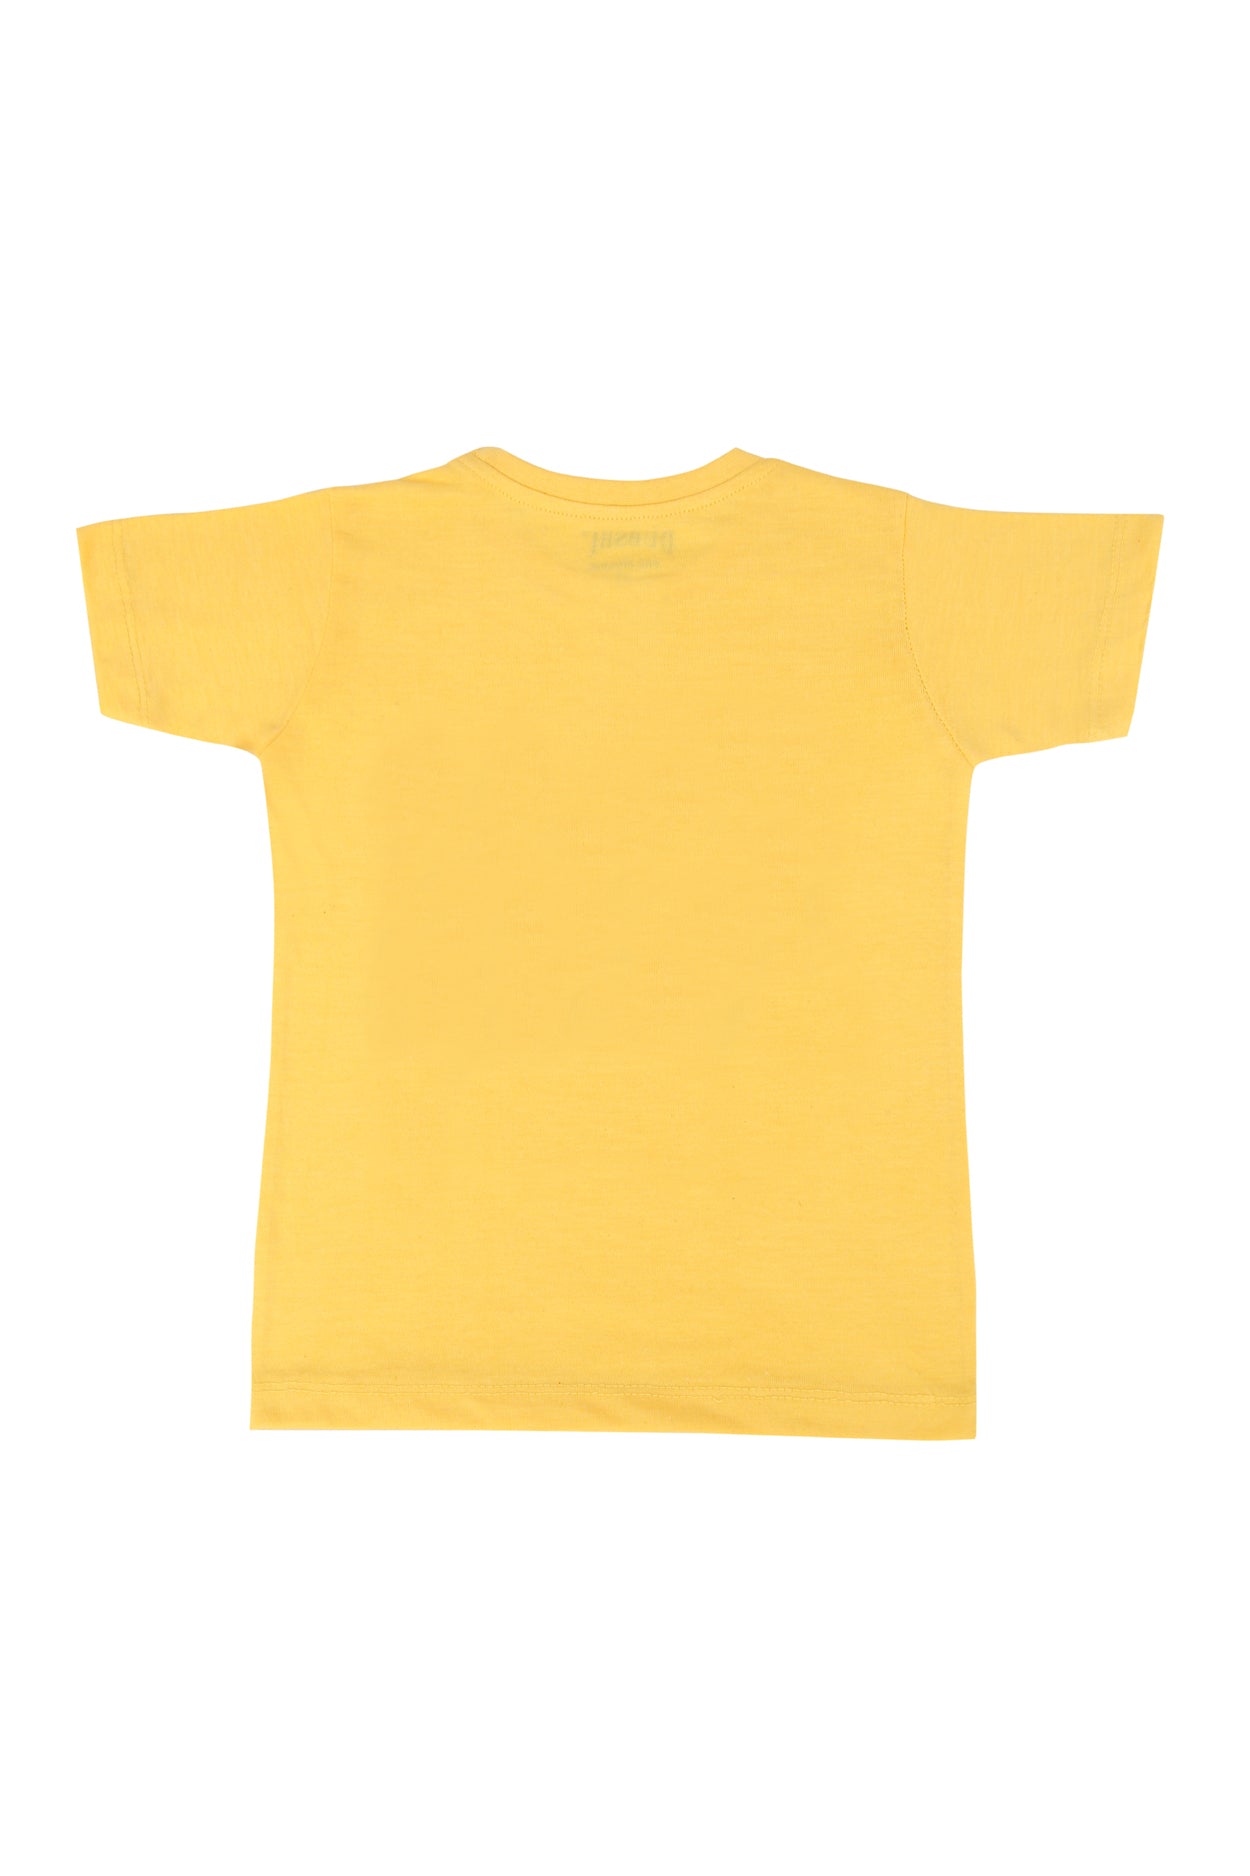 Kids T-Shirt (D-157)